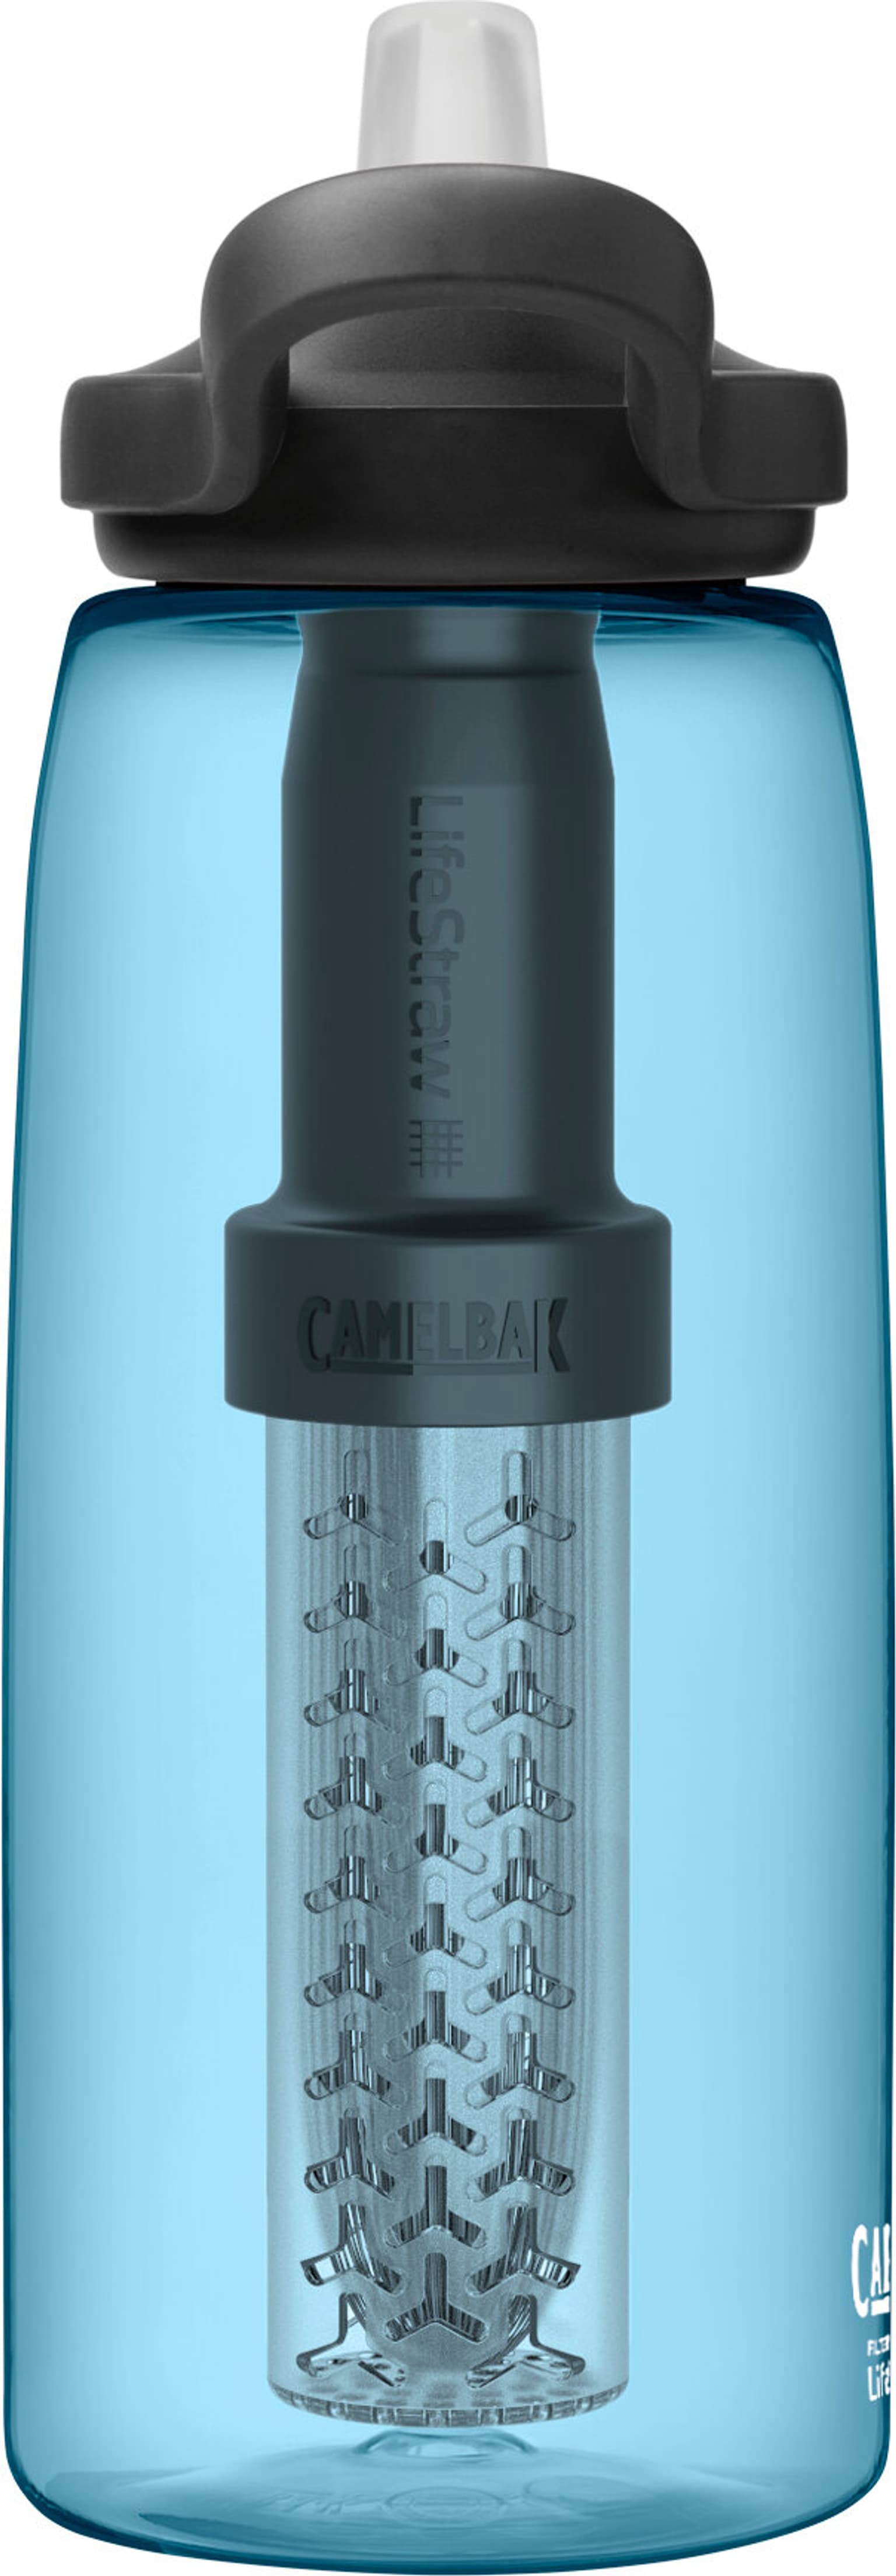 Camelbak Camelbak Eddy+ Bottle Lifestraw 1.0l Wasserfilter bleu 4